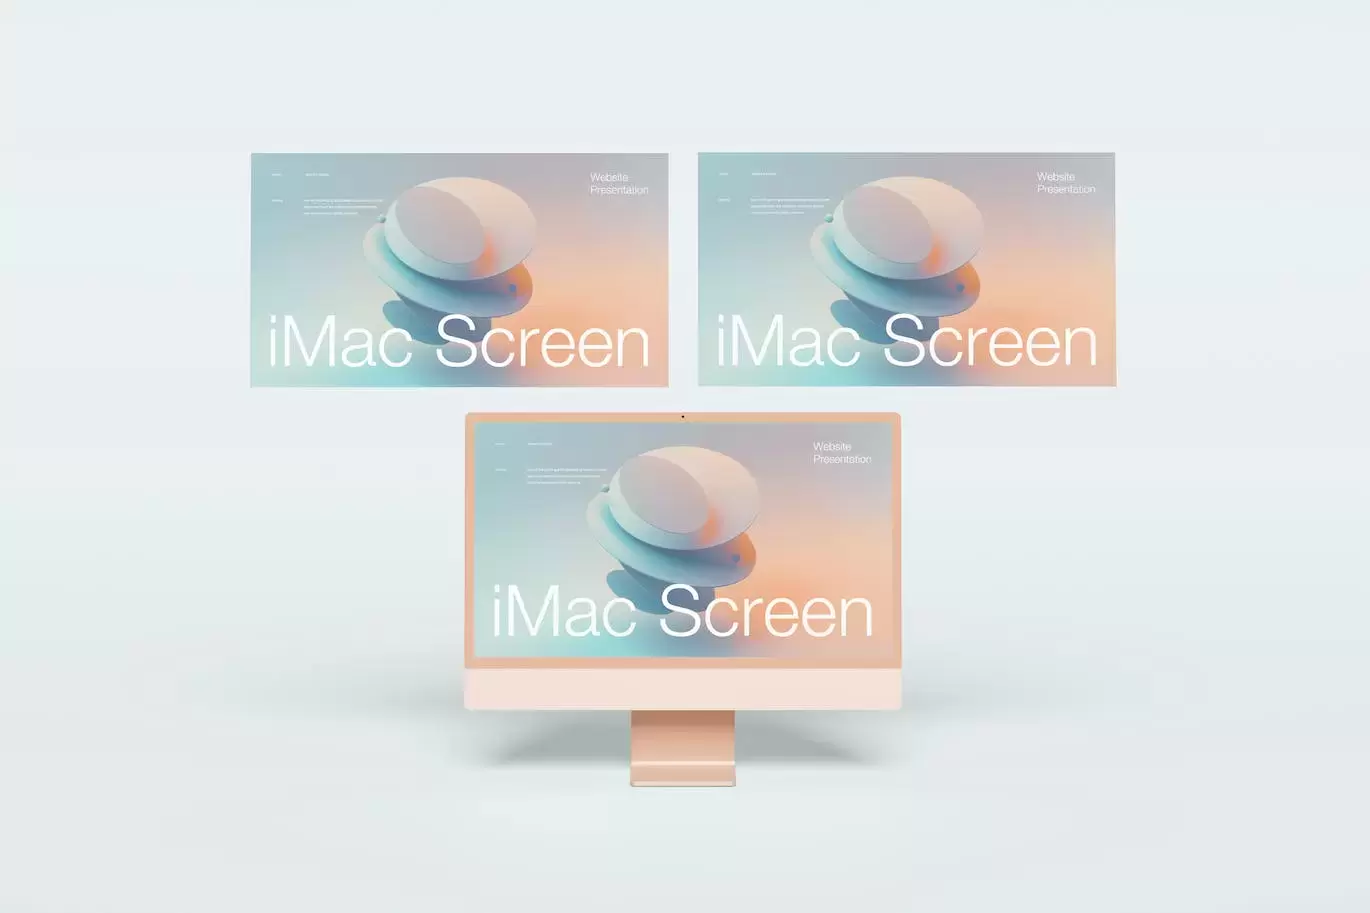 iMac 屏幕演示样机 (PSD,JPG)免费下载